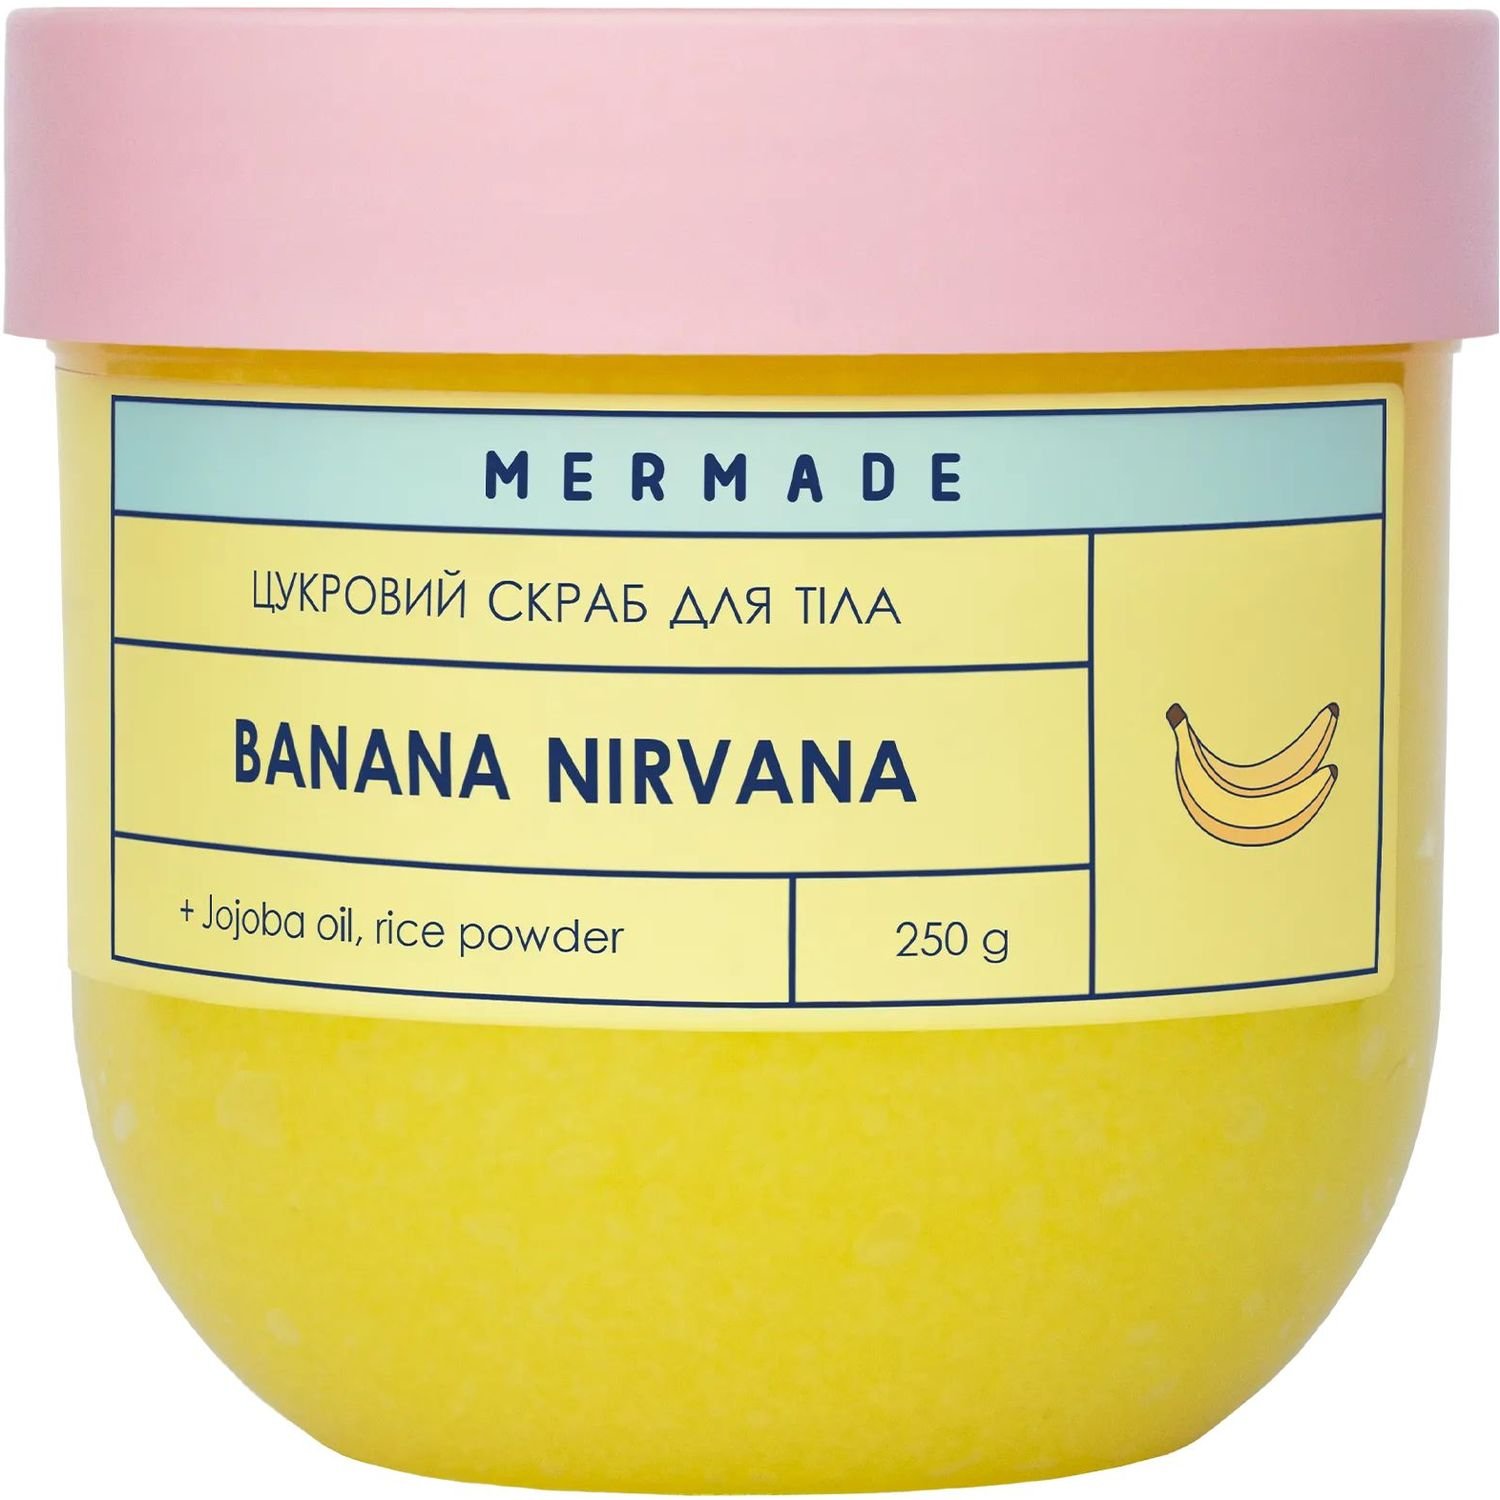 Цукровий скраб для тіла Mermade Banana Nirvana 250 г - фото 1